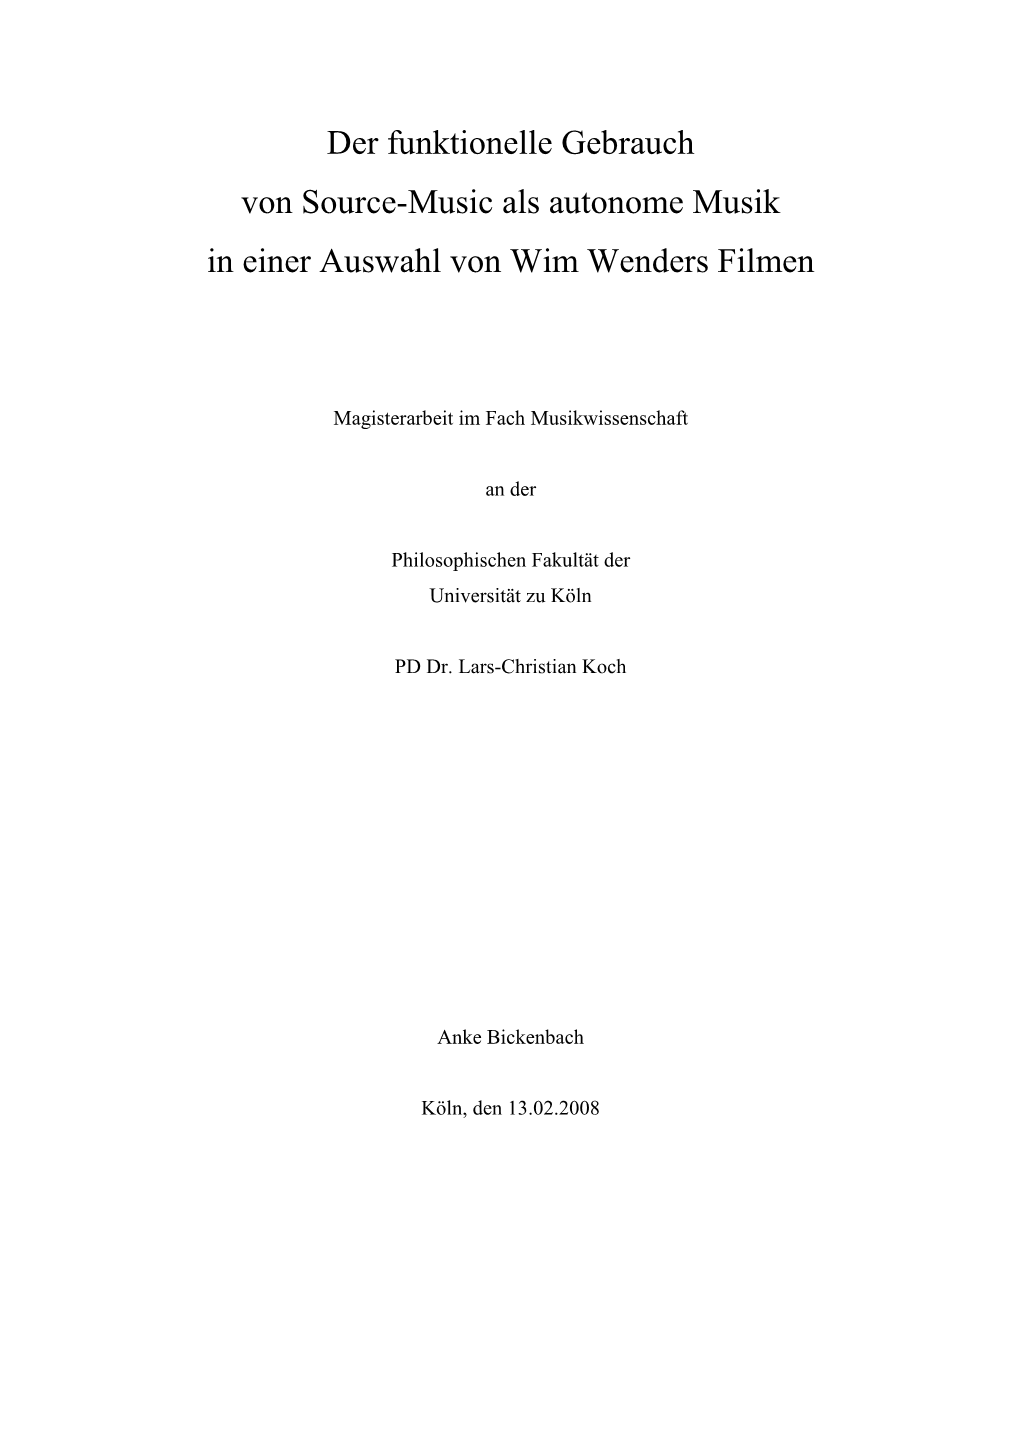 Der Funktionelle Gebrauch Von Source-Music Als Autonome Musik in Einer Auswahl Von Wim Wenders Filmen